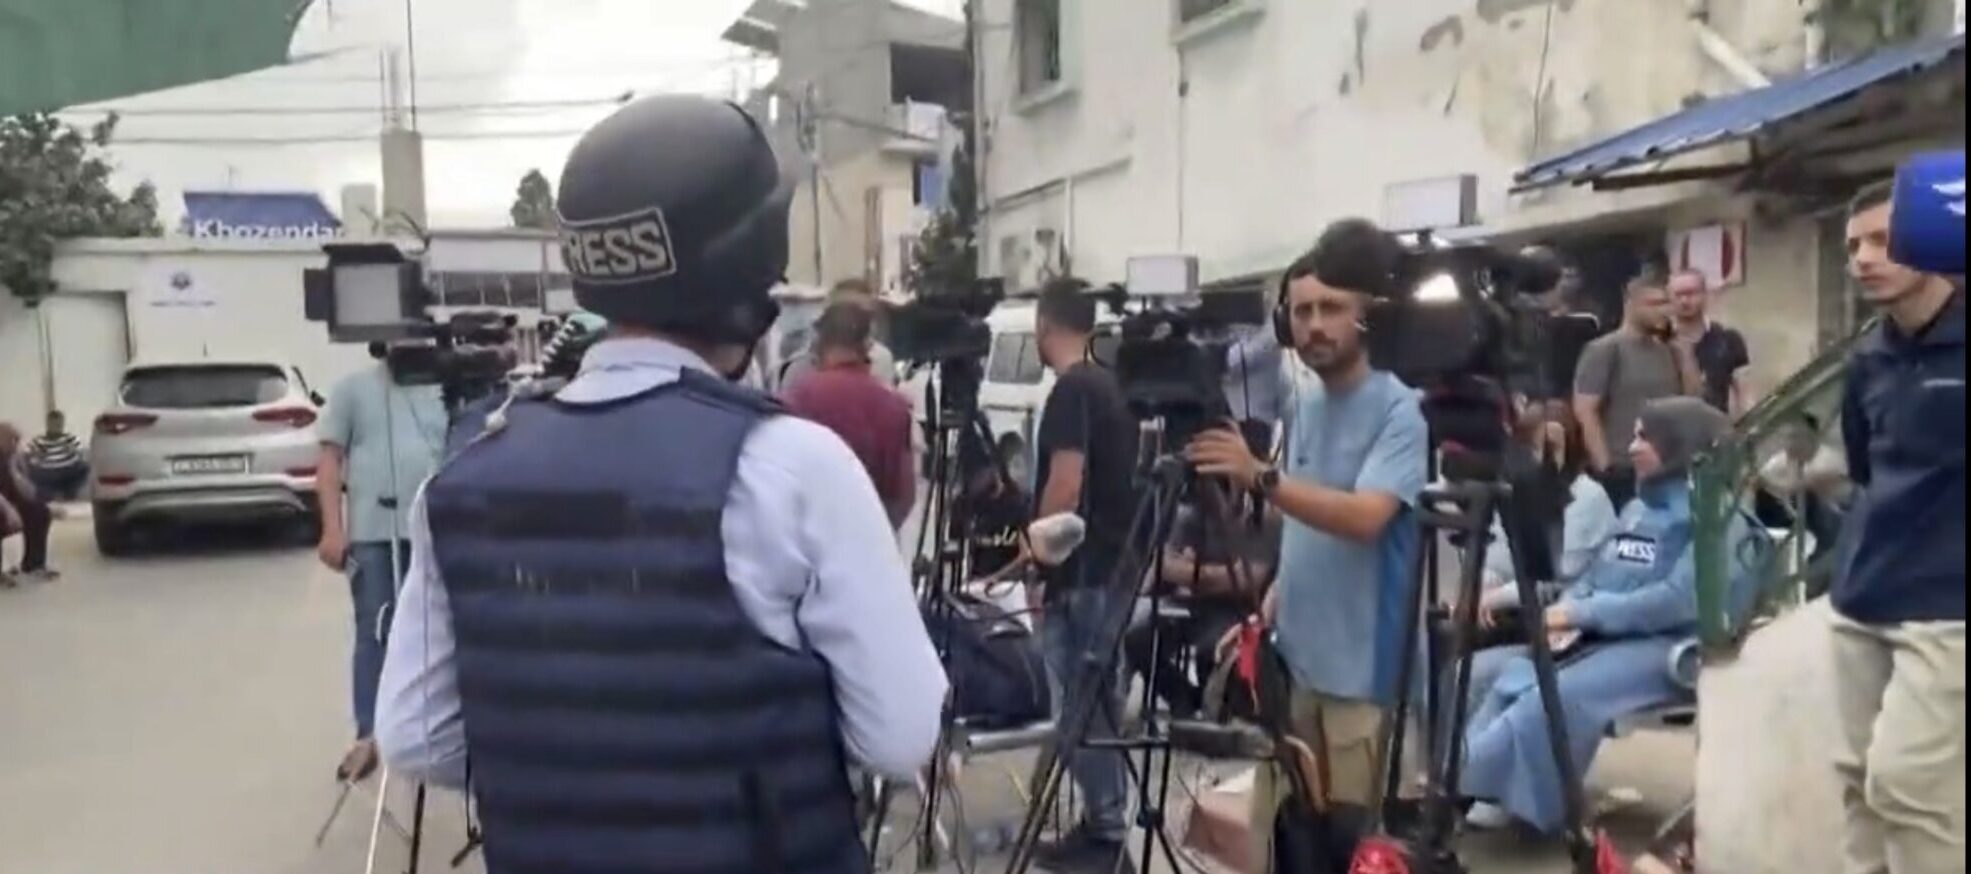 Al menos 23 periodistas asesinados por Israel en Gaza